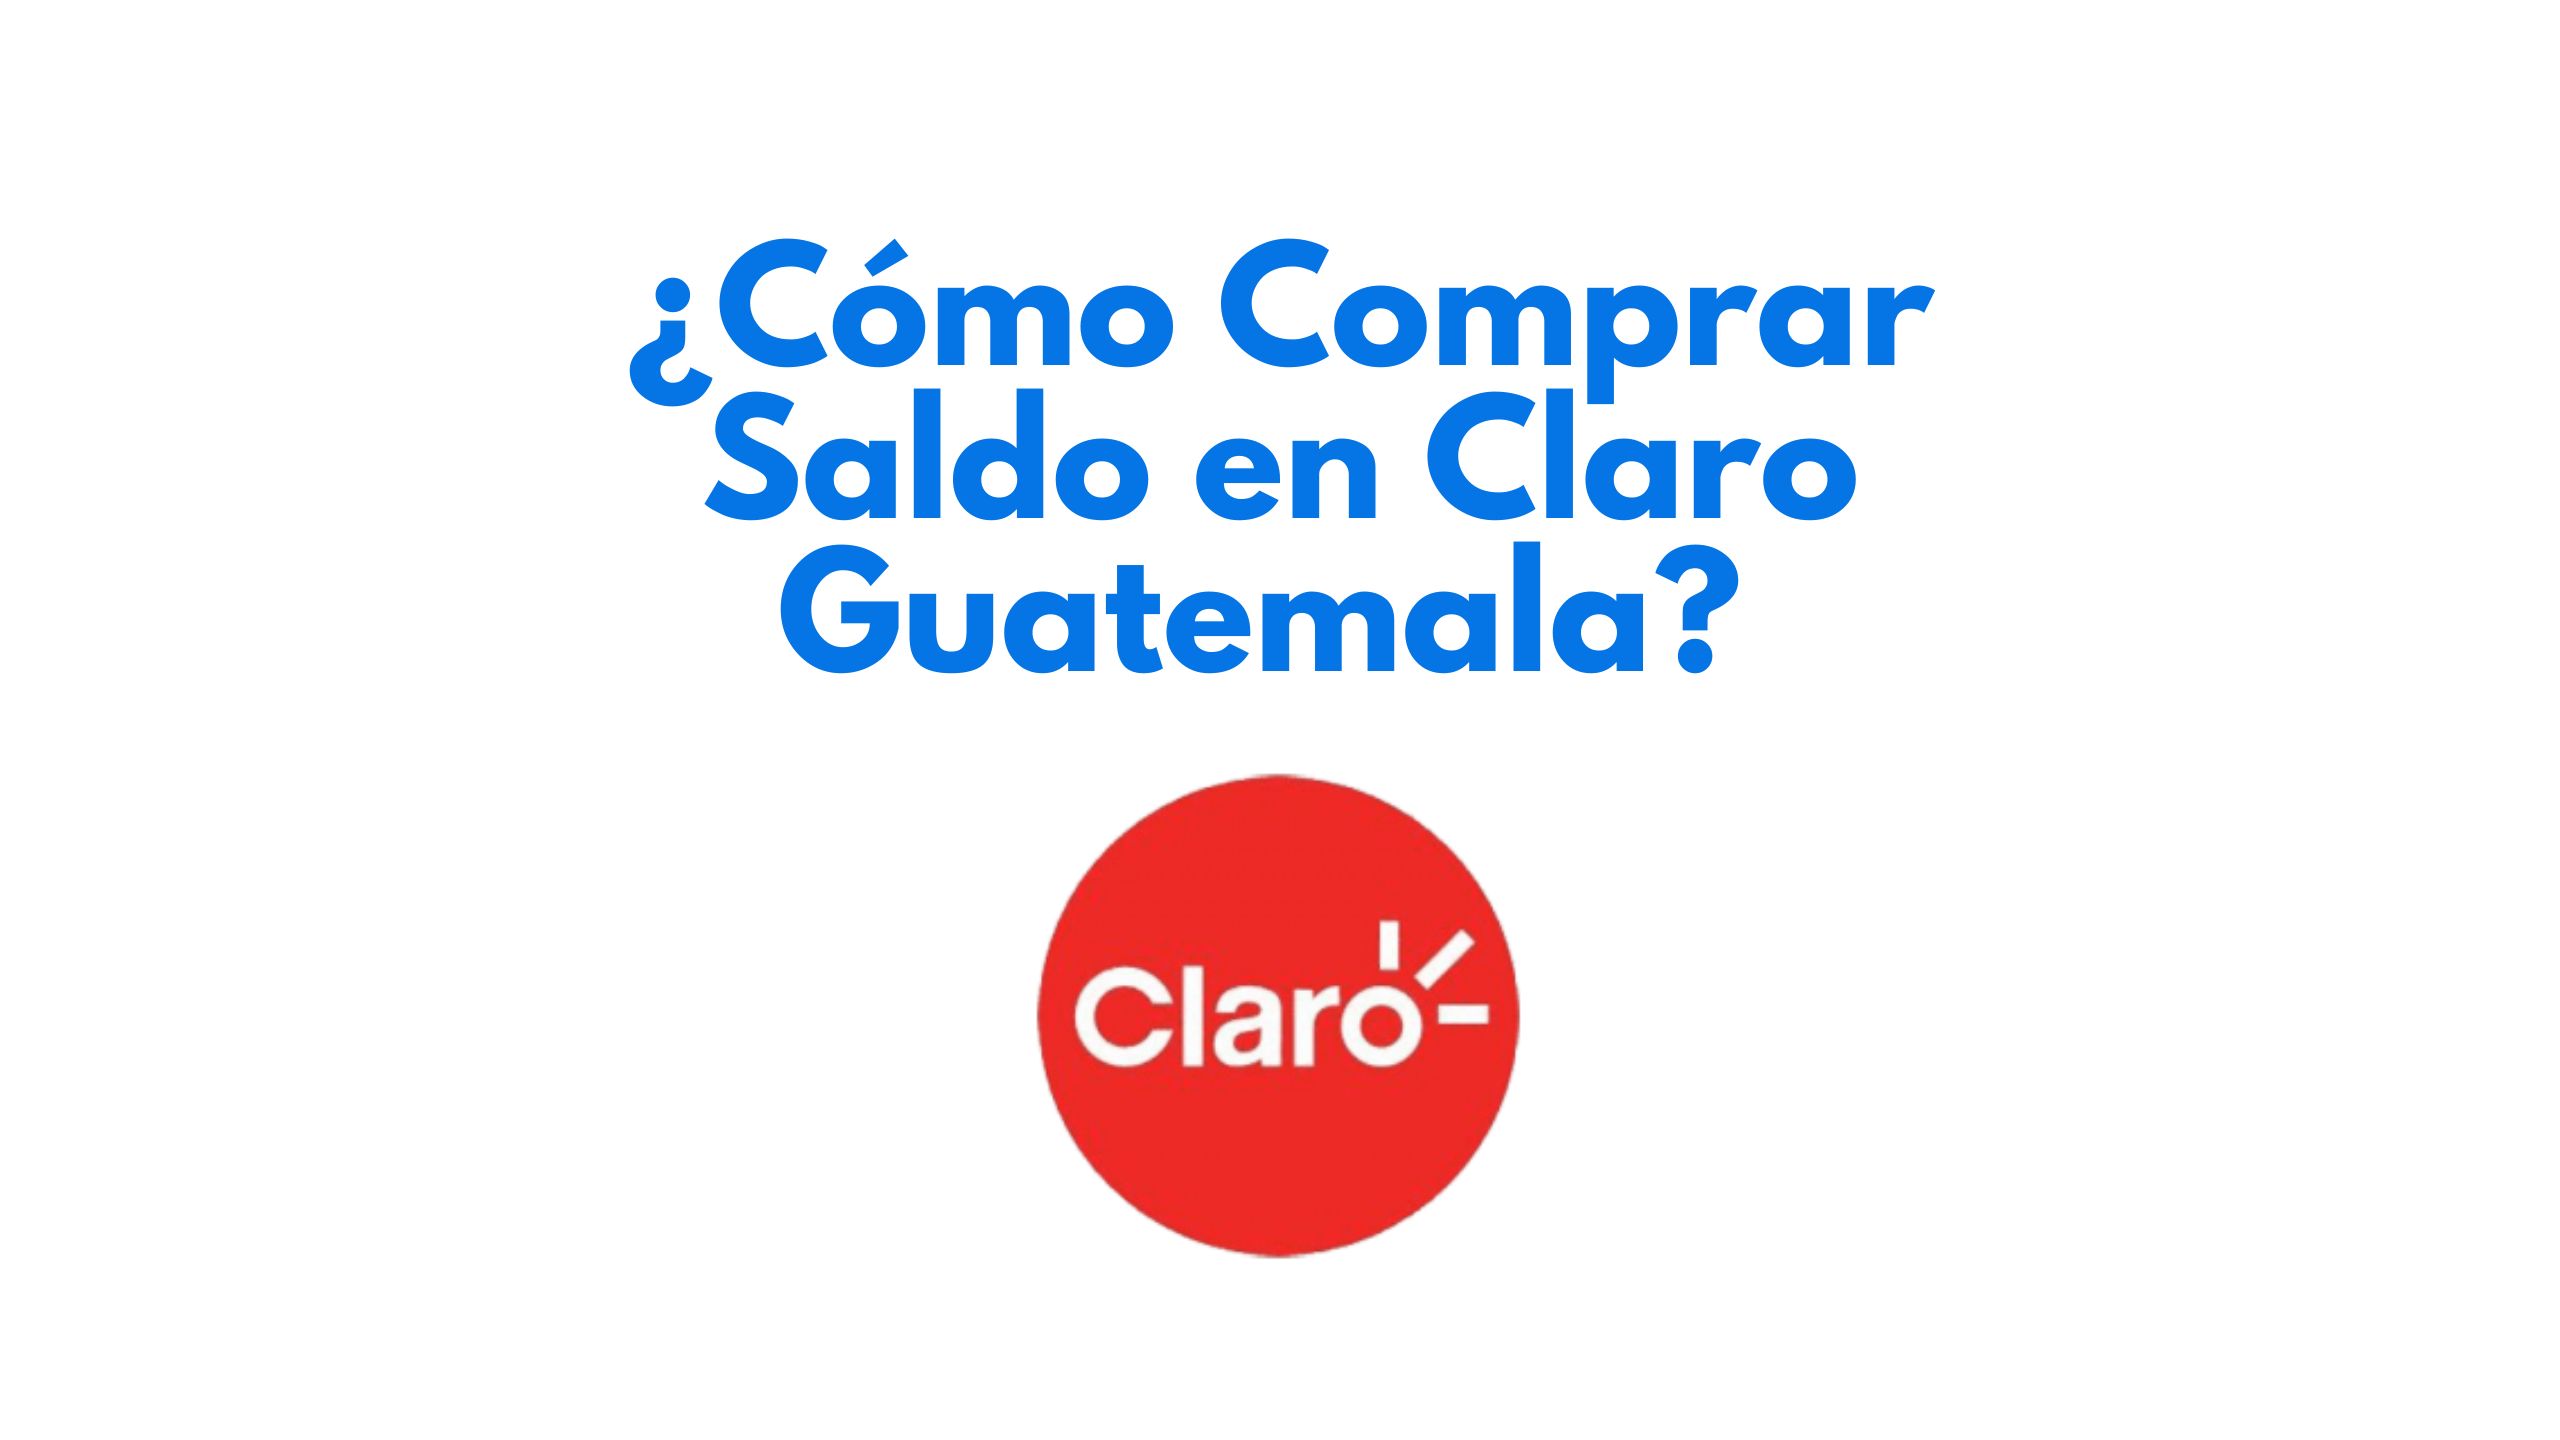 ¿Cómo comprar saldo en Claro Guatemala?